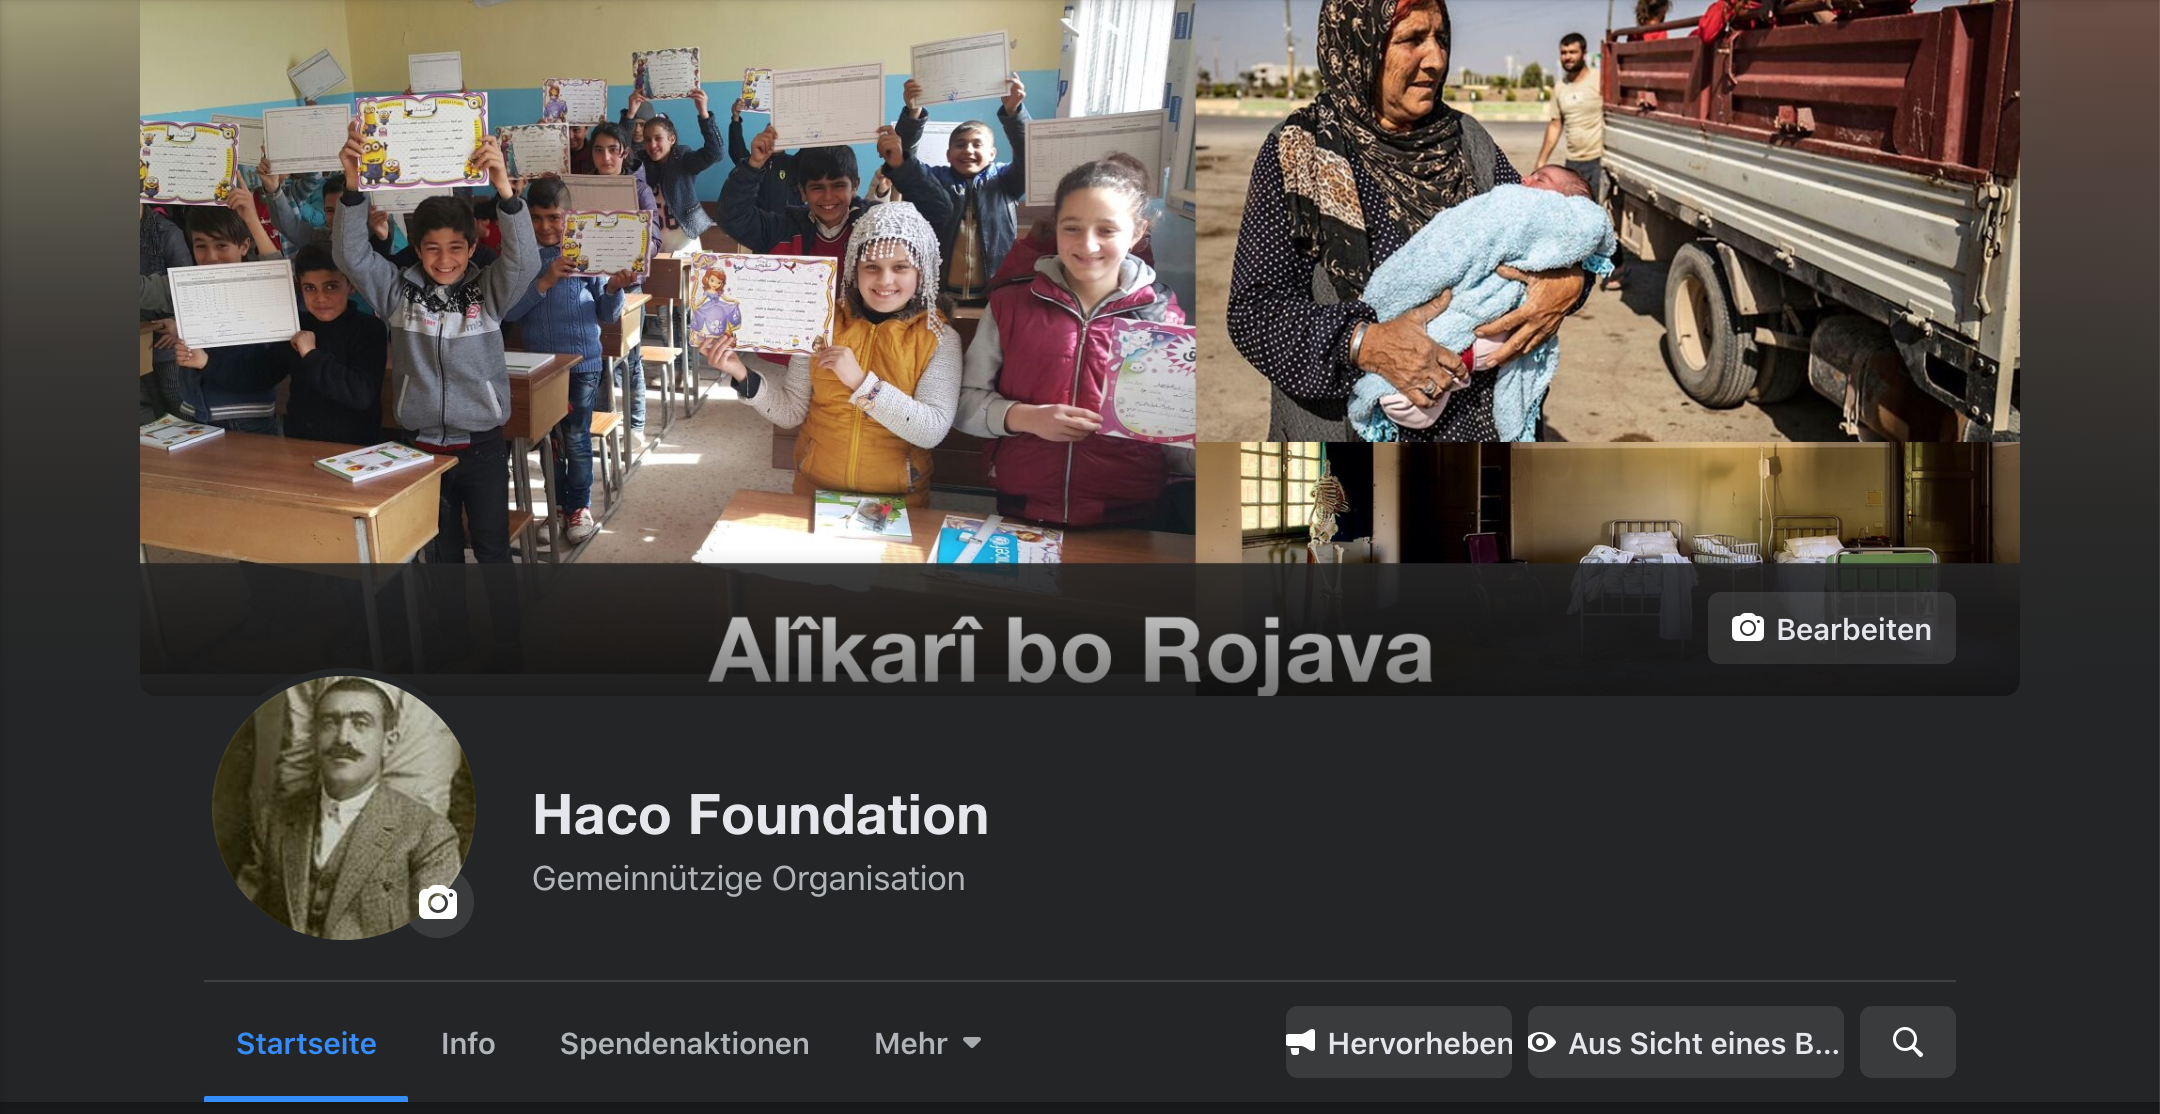 Haco Foundation